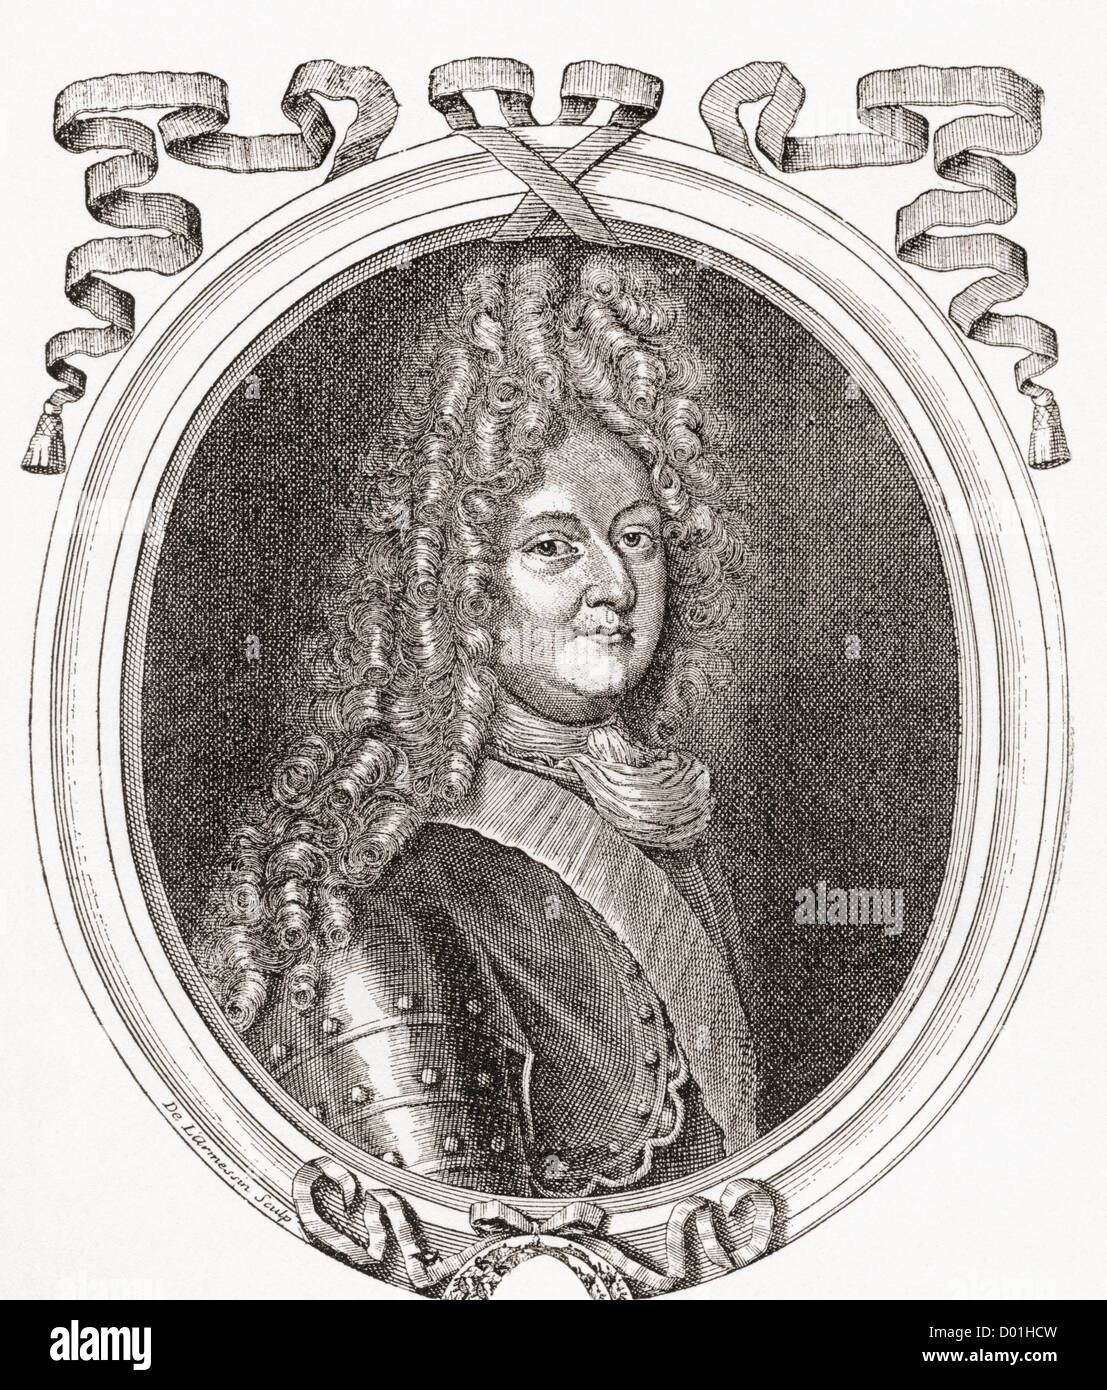 Louis di Francia, Grand Dauphin, 1661 - 1711. Il figlio maggiore ed erede apparenti di Luigi XIV Re di Francia. Foto Stock